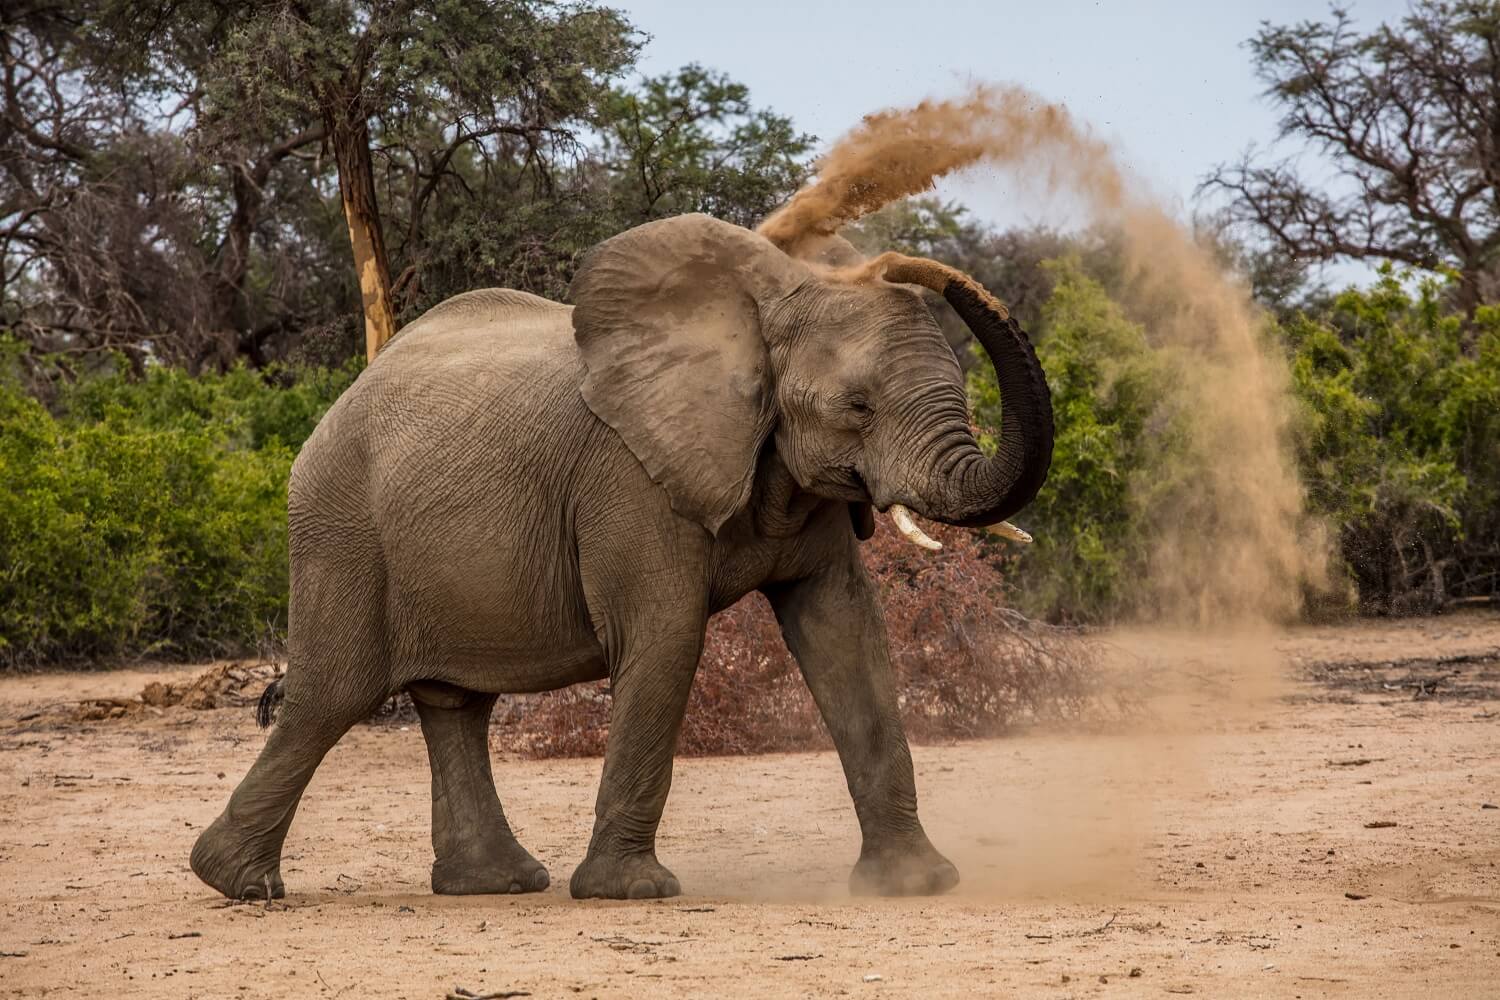 Ein Elefant spielt in einem Tierfilm oder einer Tierdokumentation mit Sand.